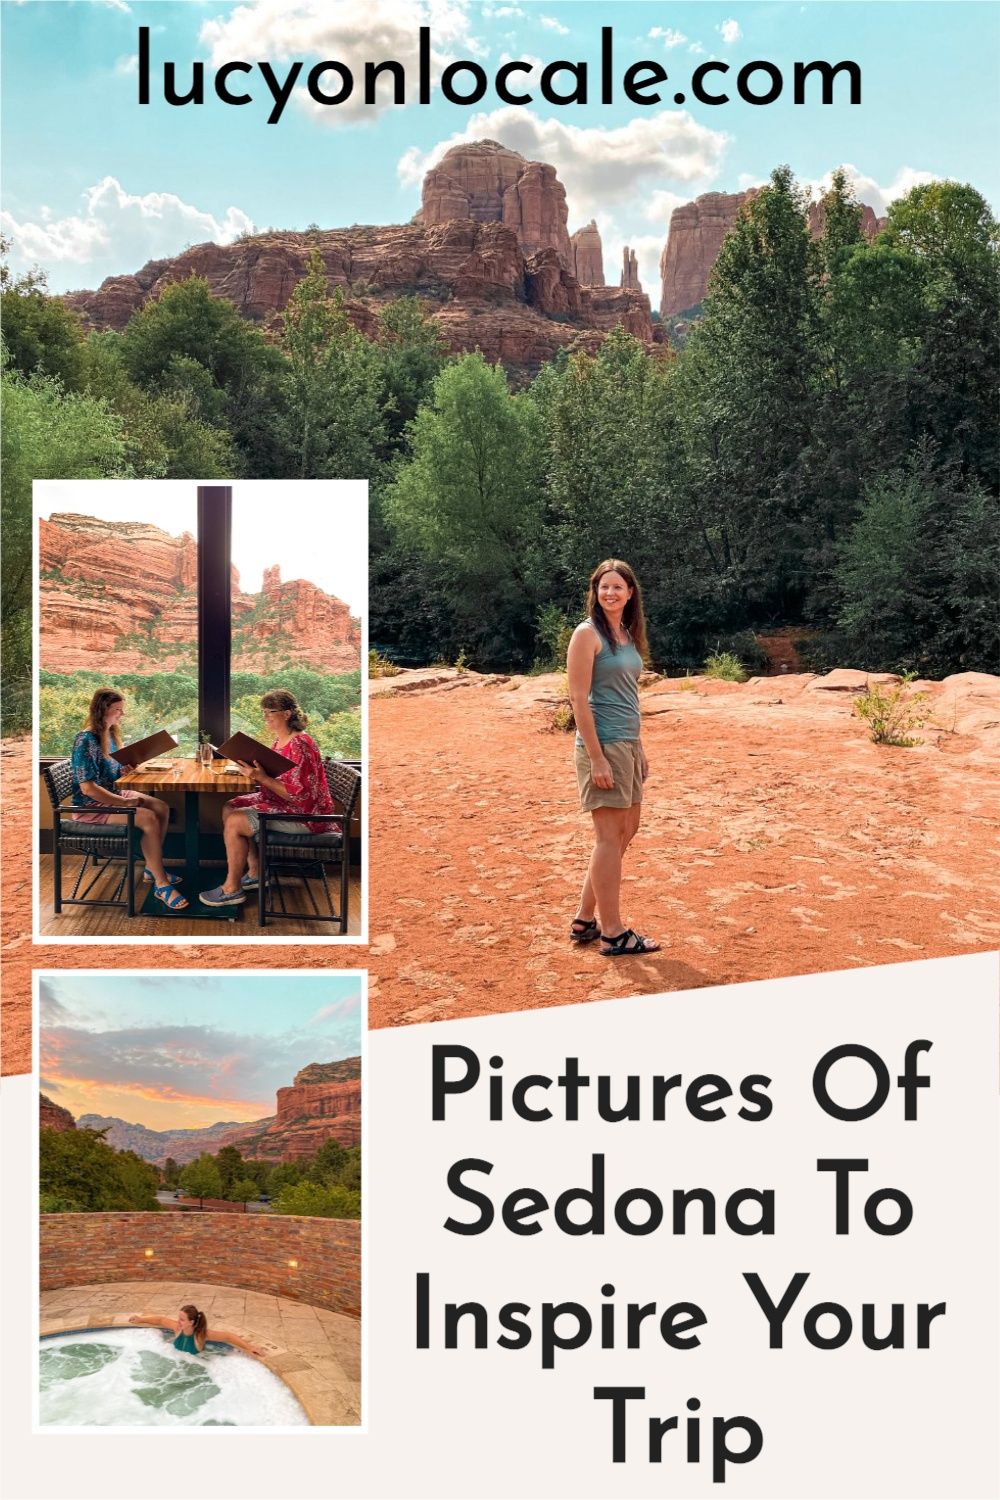 Pictures of Sedona Arizona